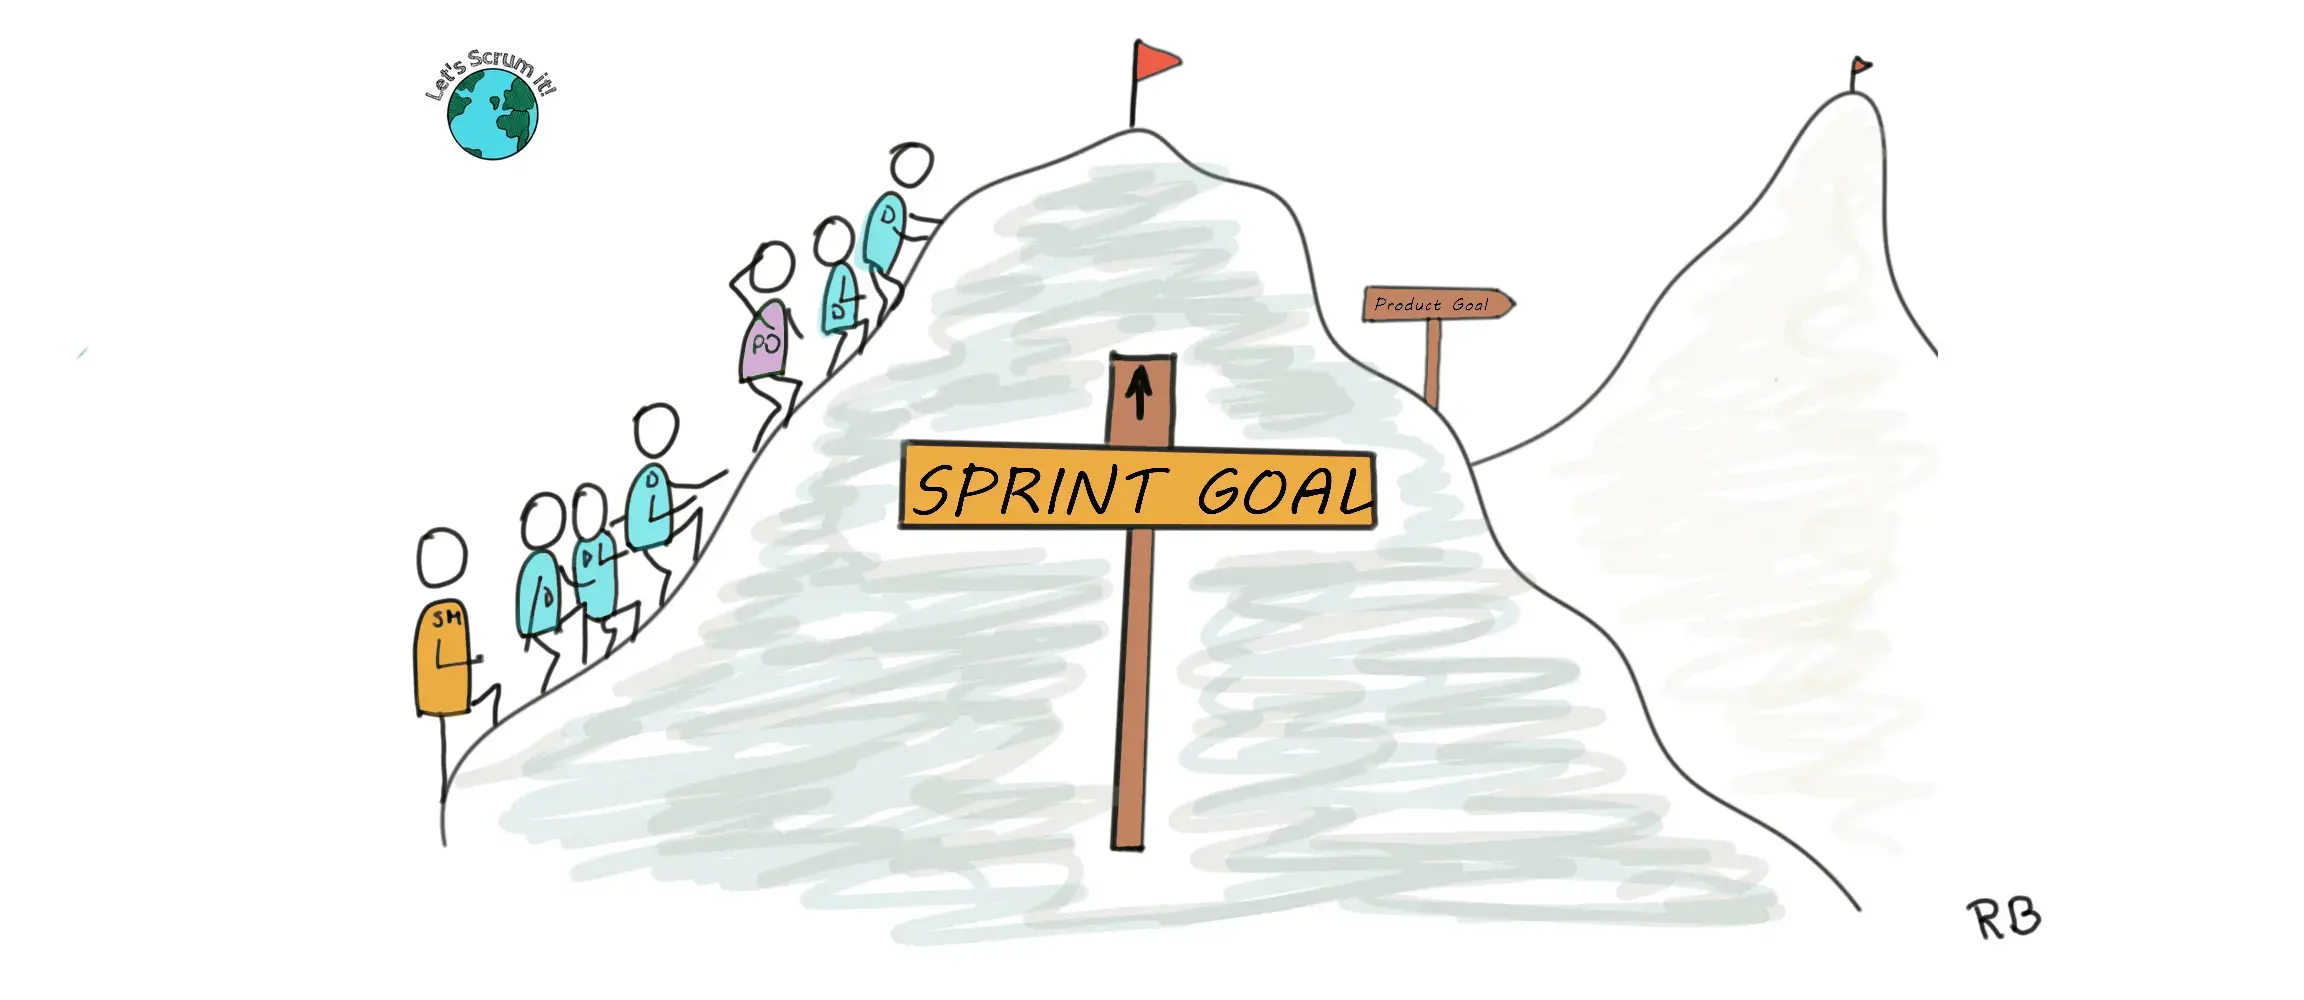 Cel Sprintu w Scrumie - dlaczego go potrzebujemy?